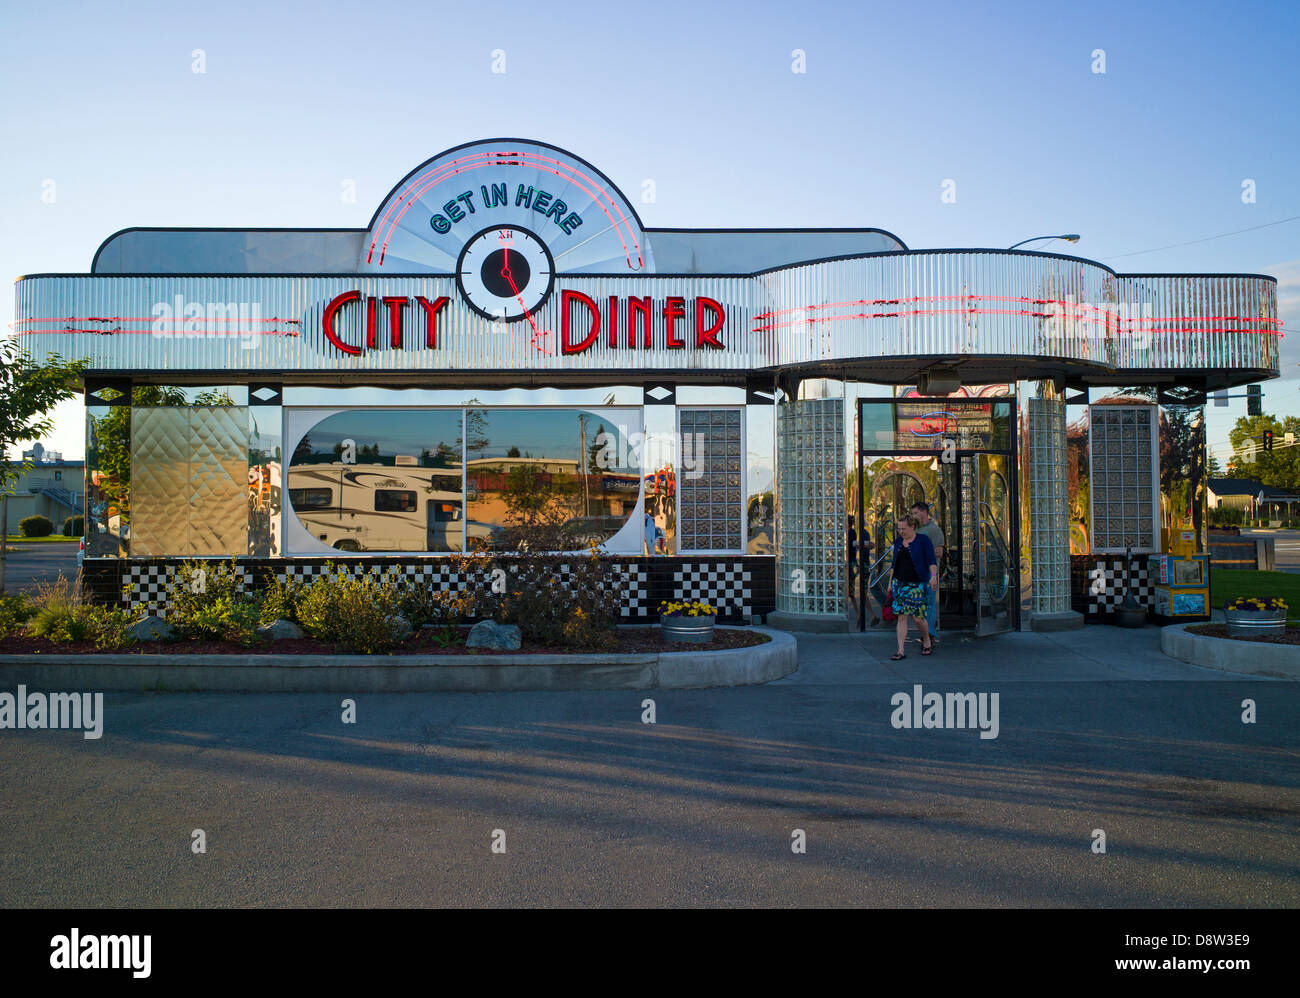 Vista esterna del design retrò in acciaio inox City Diner, Anchorage, Alaska, STATI UNITI D'AMERICA Foto Stock